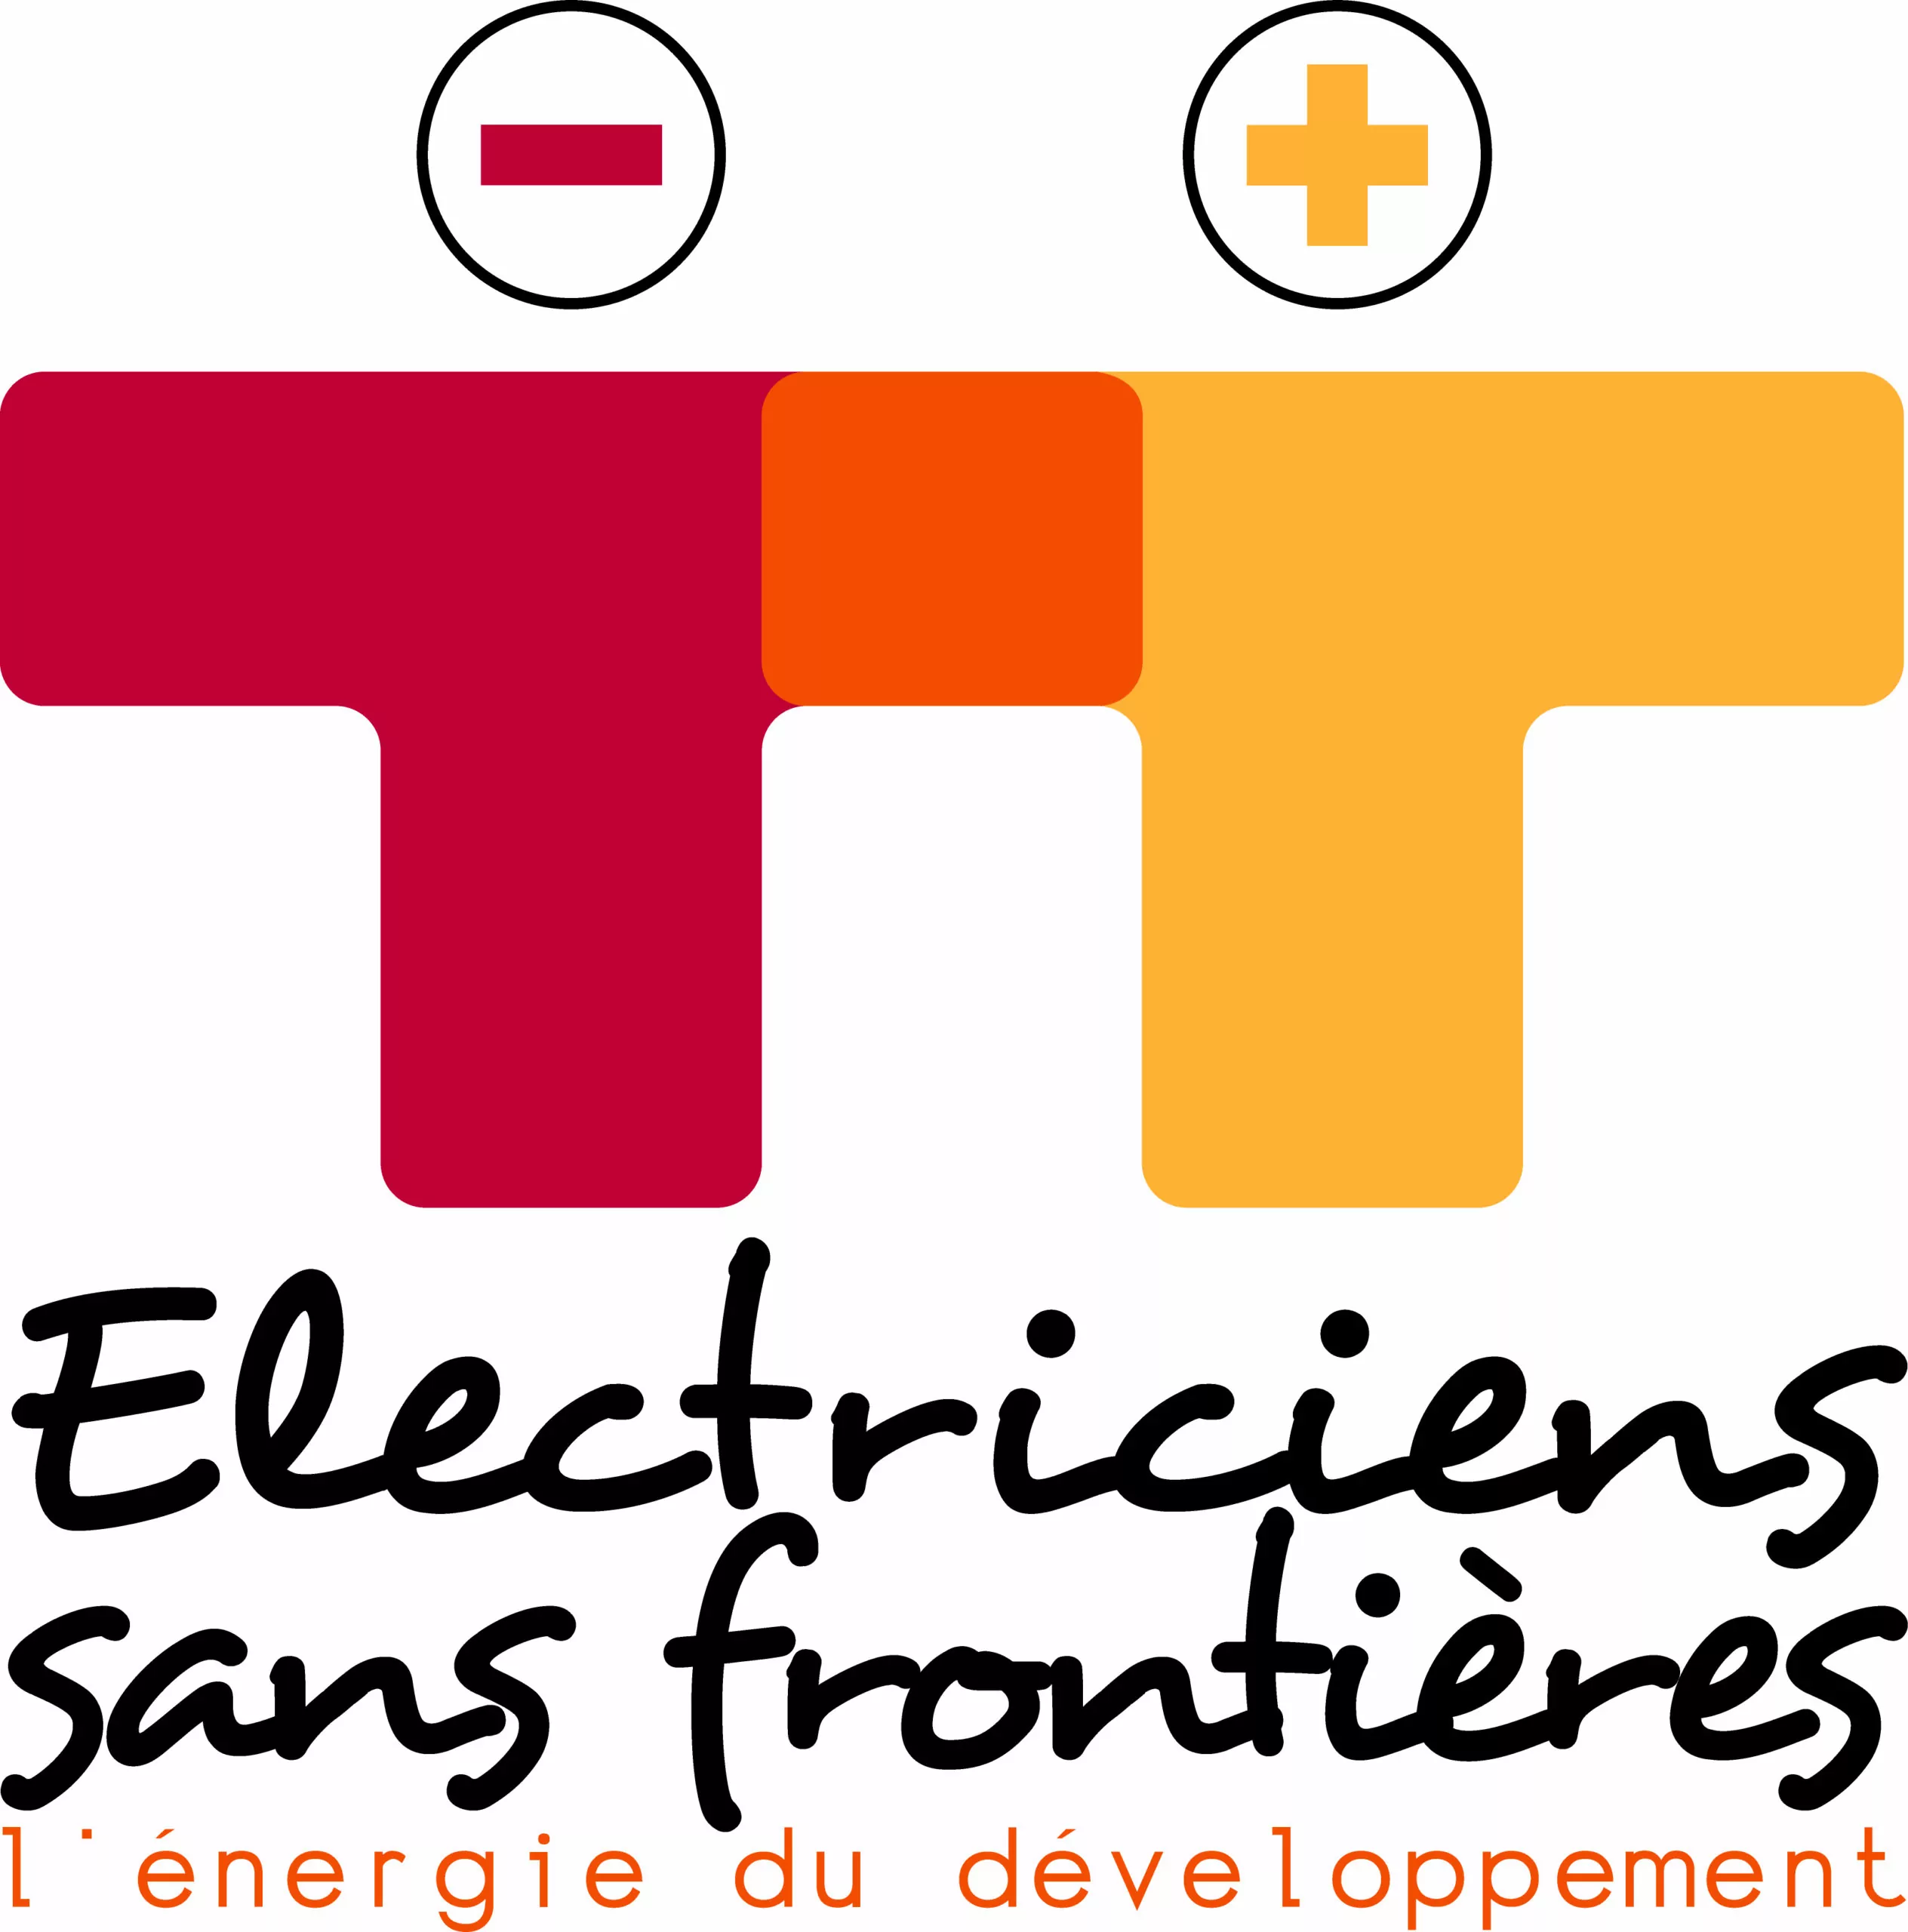 L’ONG Electriciens sans frontières recherche un(e) Chargé(e) de projet urgences et développement, Pantin, France